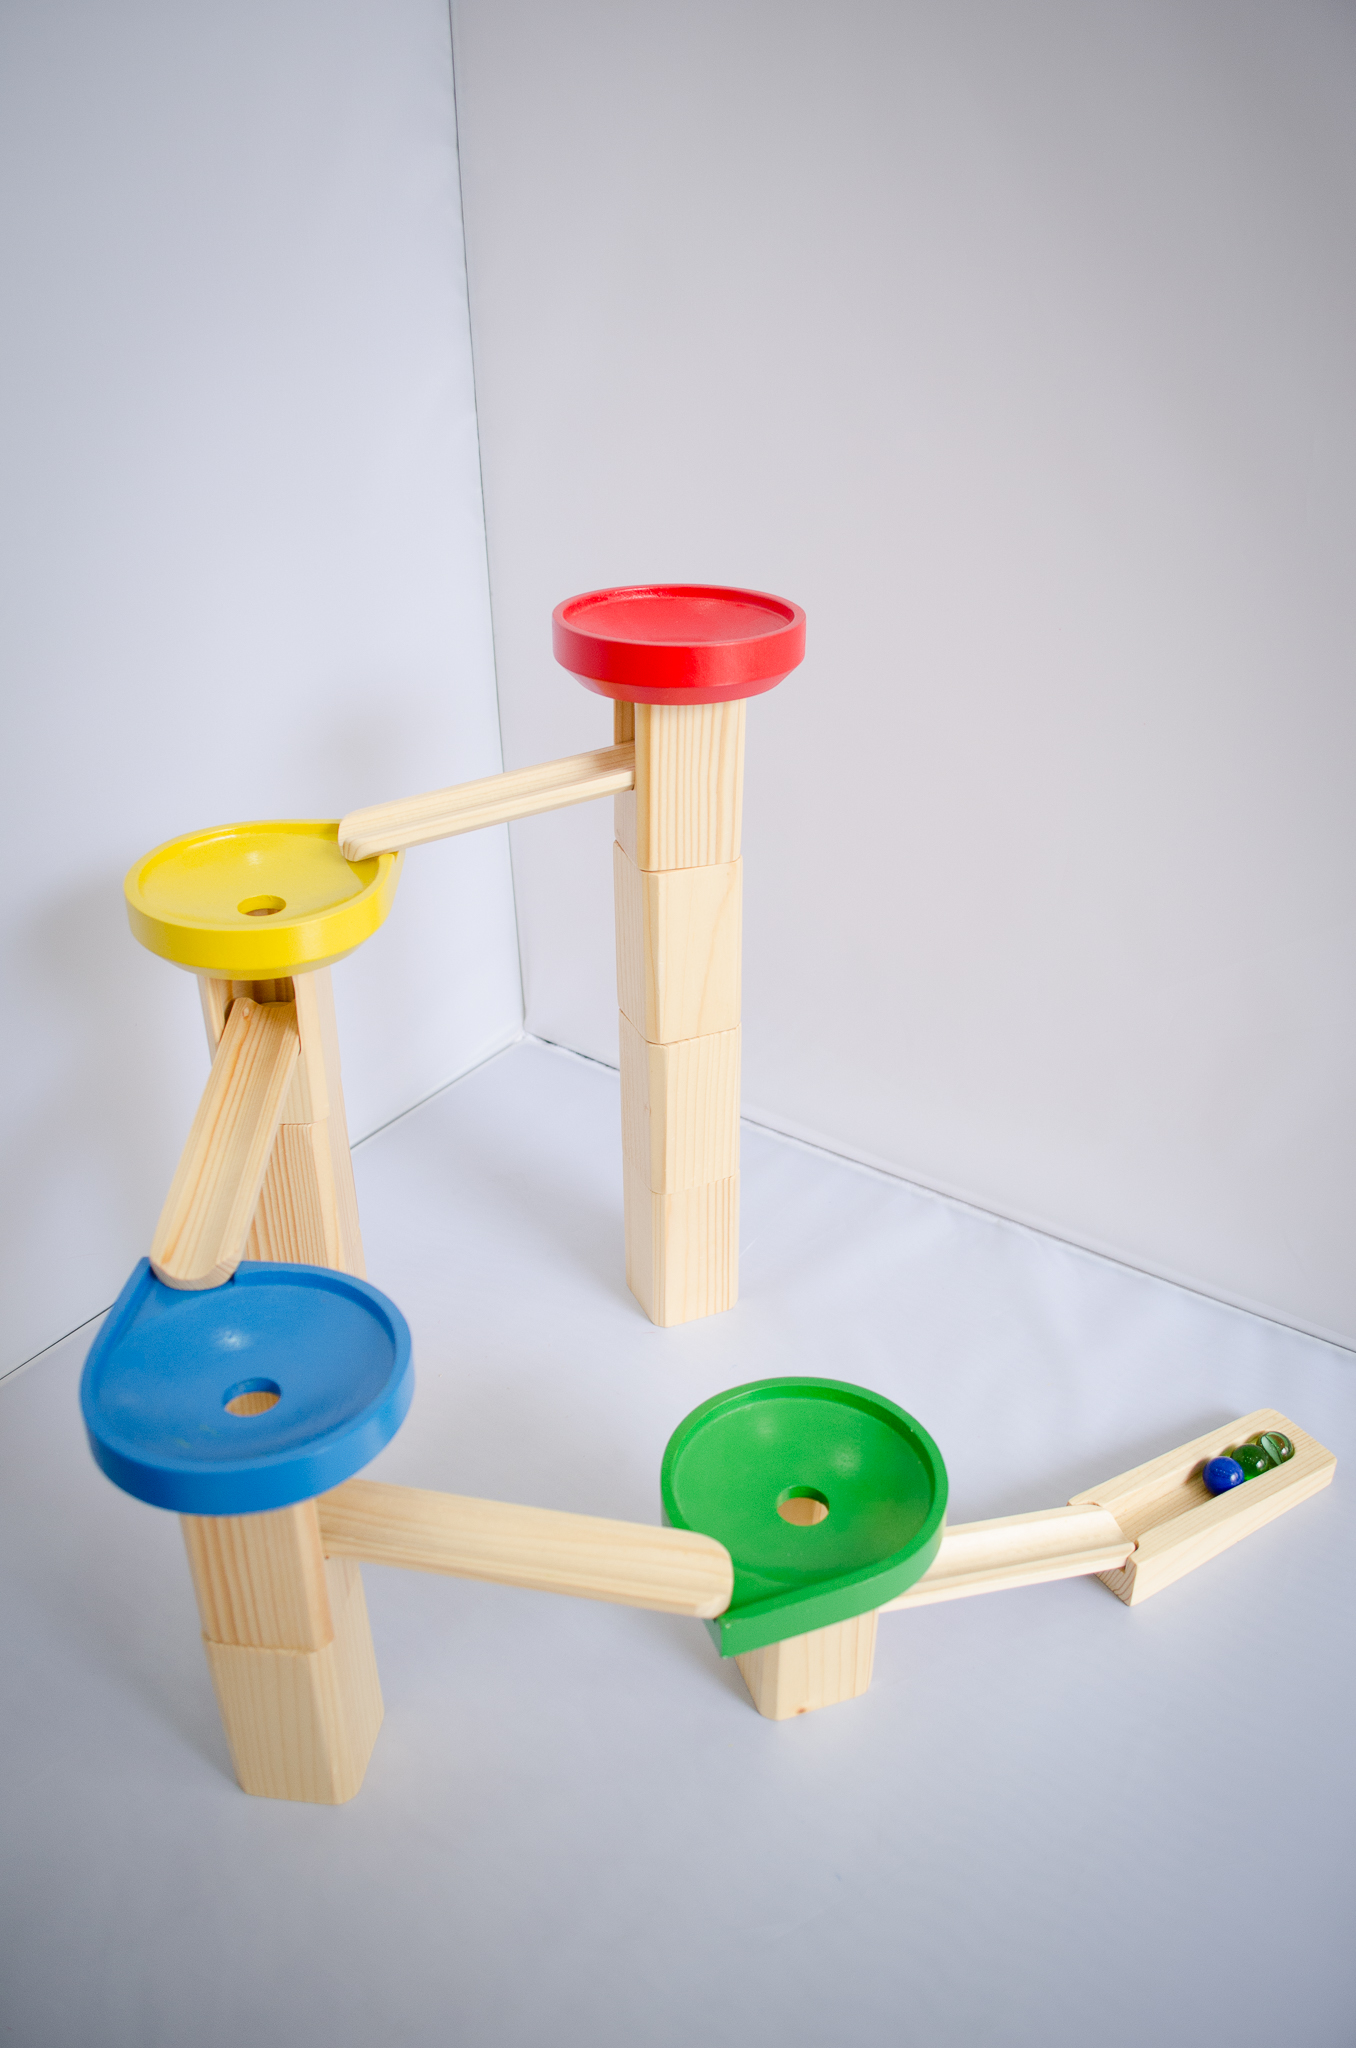 Mô hình tháp đua bi đồ chơi gỗ sáng tạo cho bé